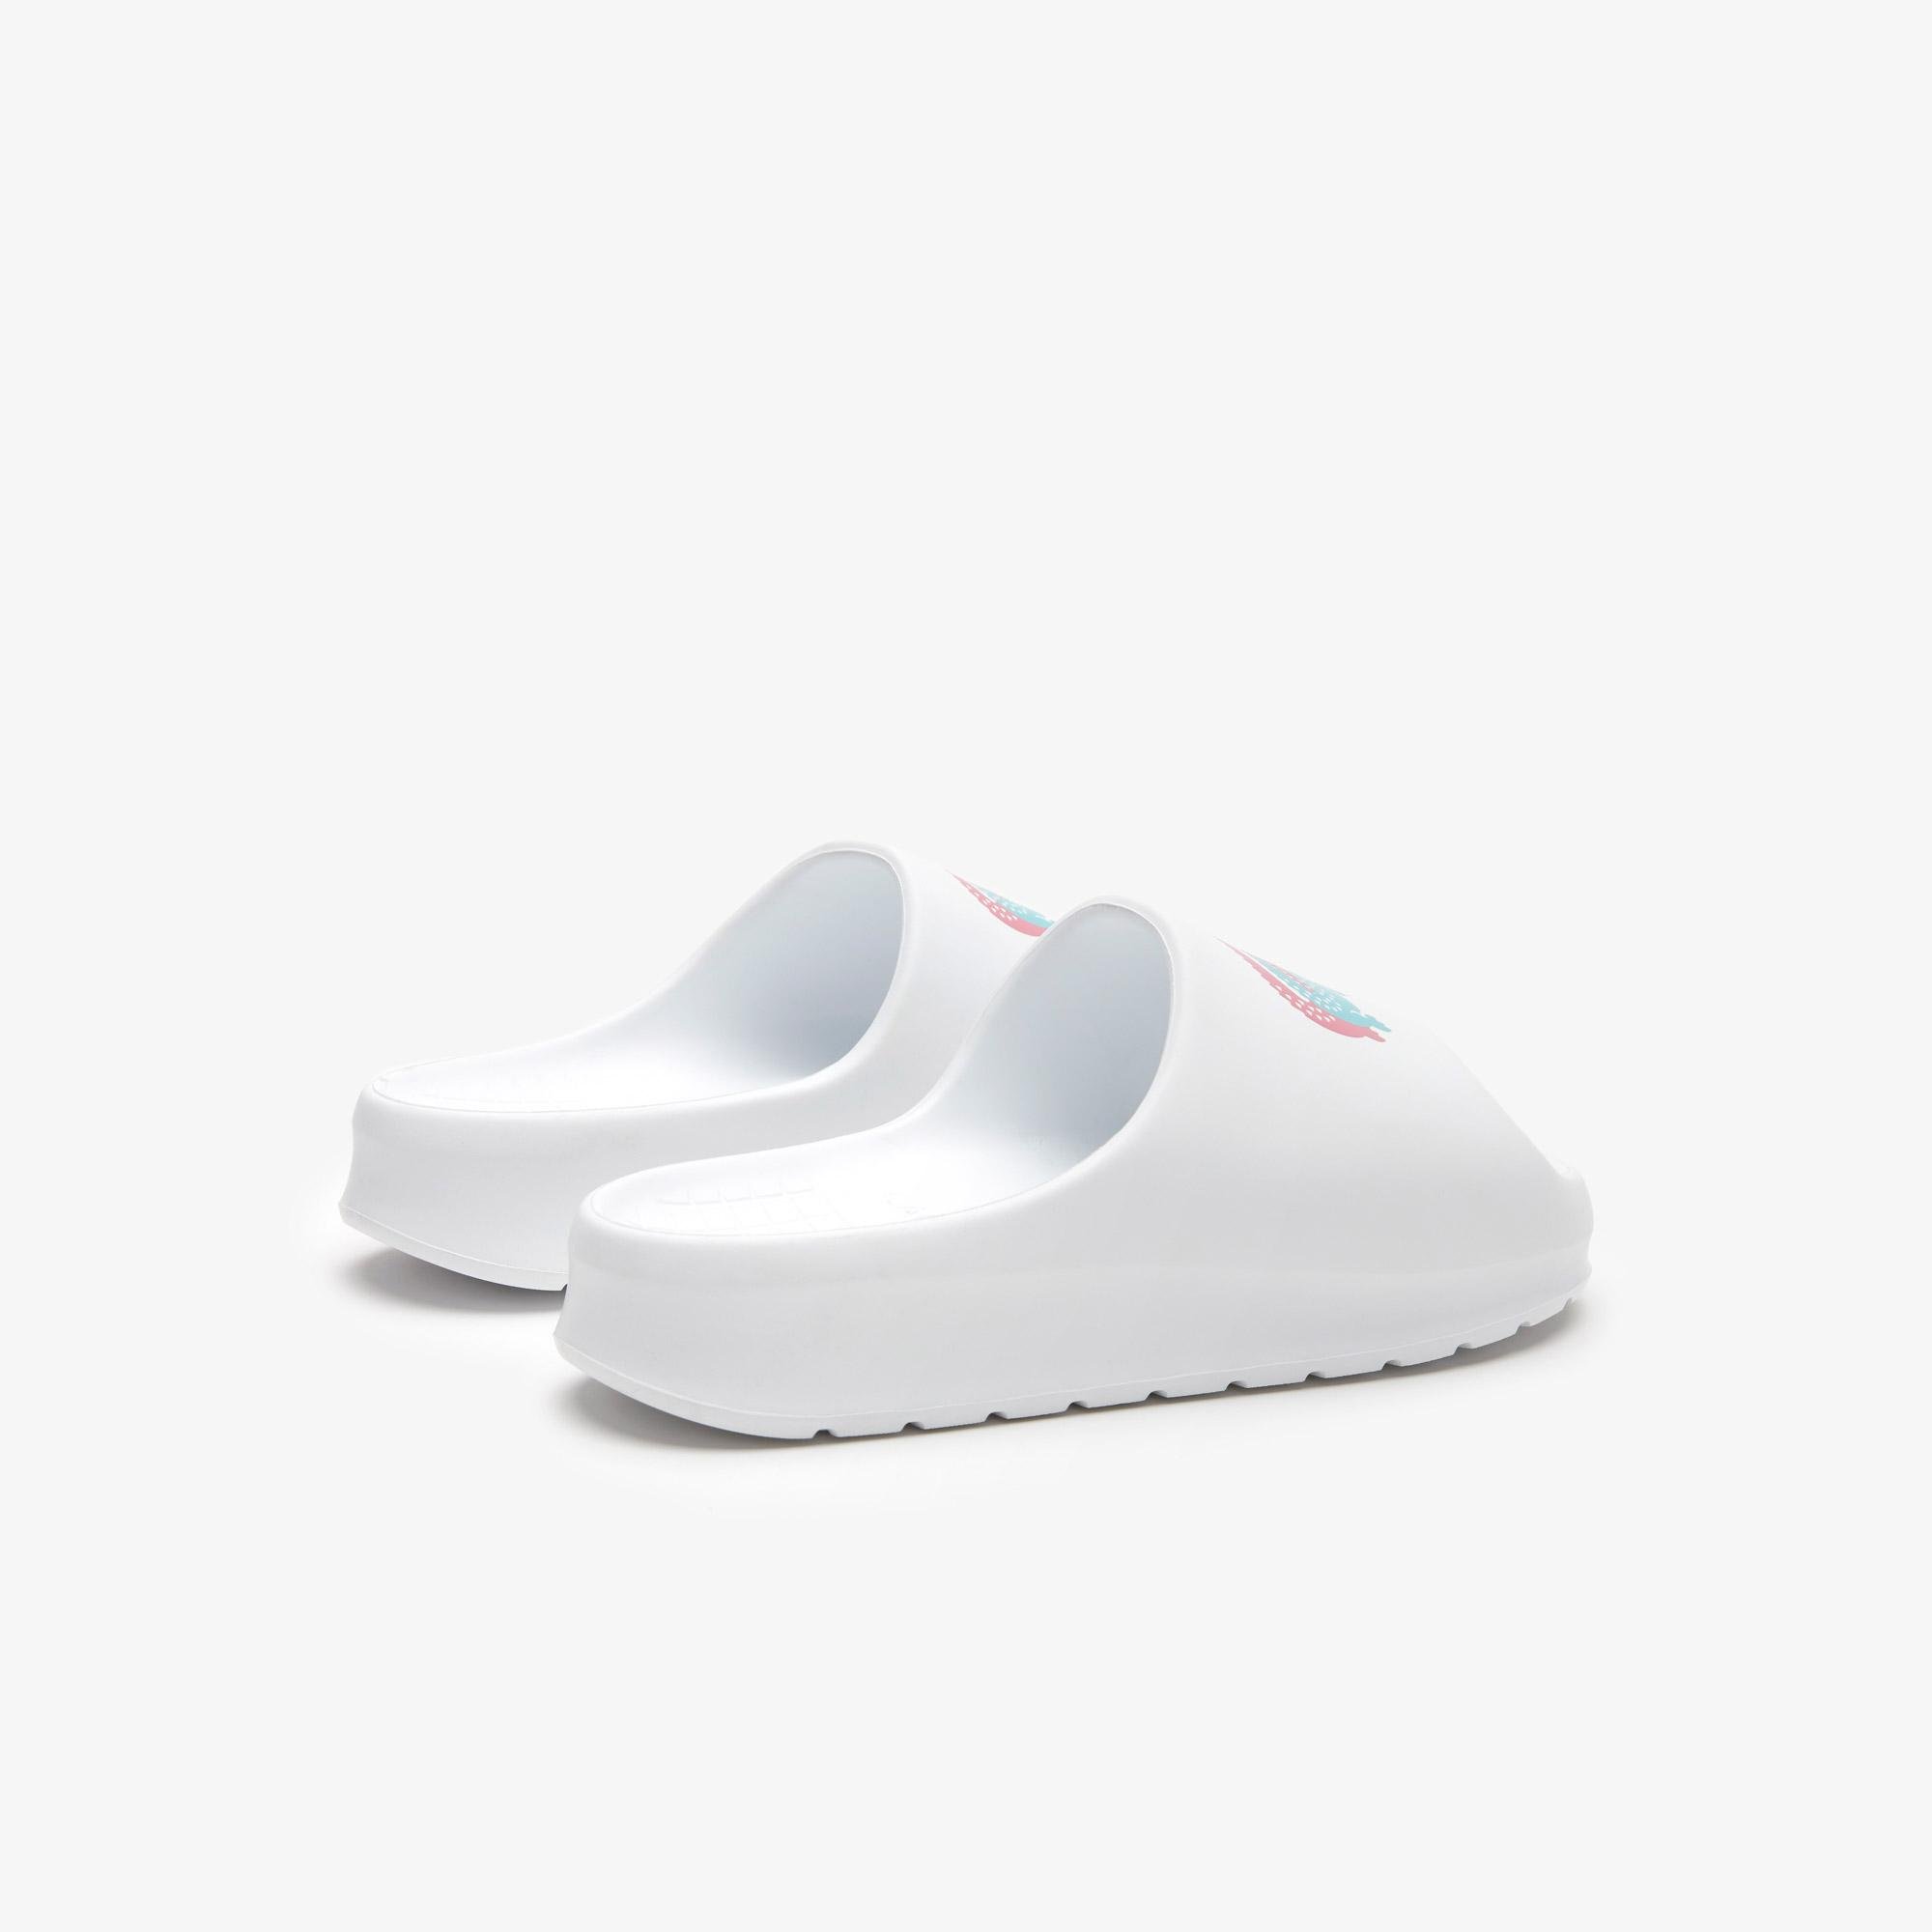 
Dámske biele papuče Lacoste Serve Slide 2.0